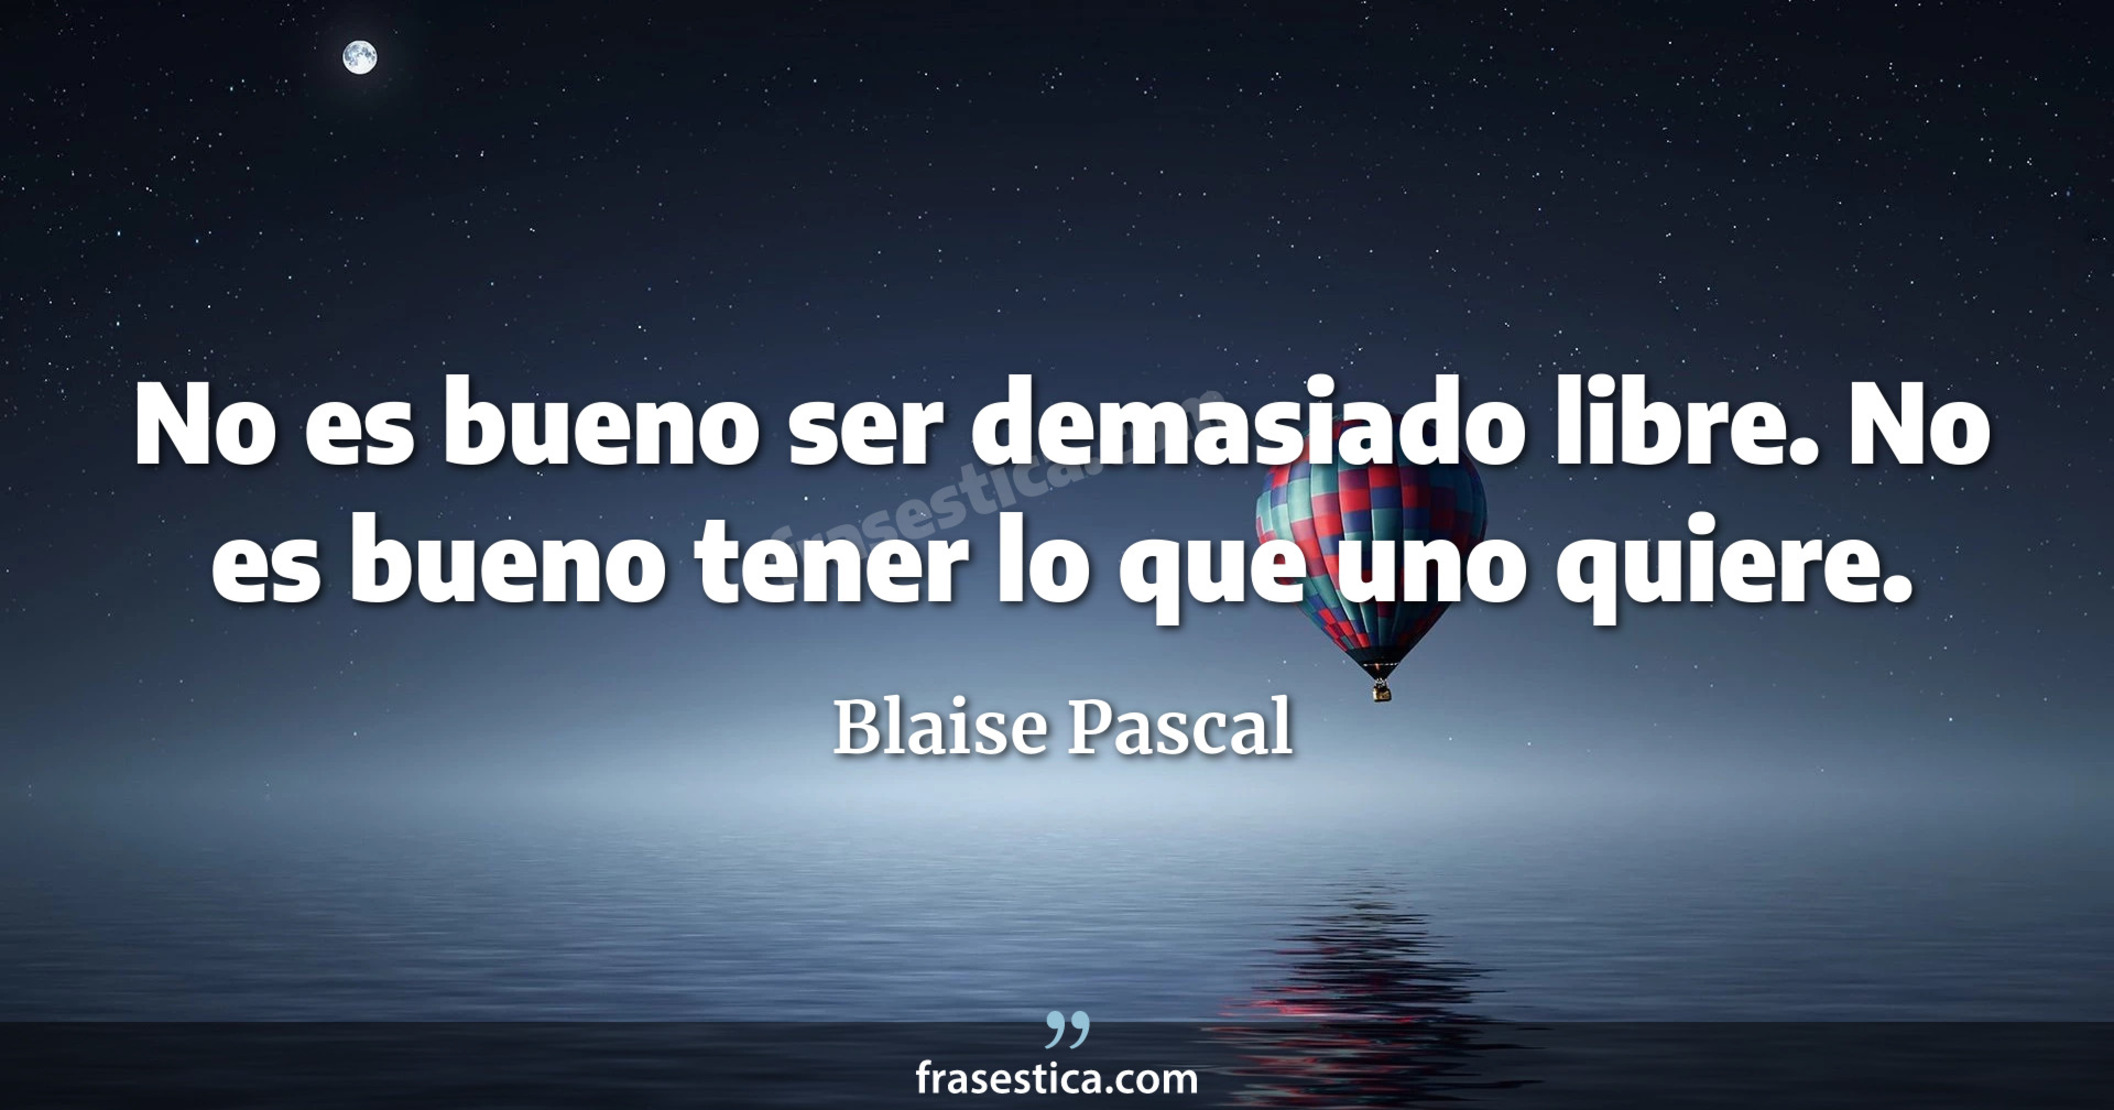 No es bueno ser demasiado libre. No es bueno tener lo que uno quiere. - Blaise Pascal